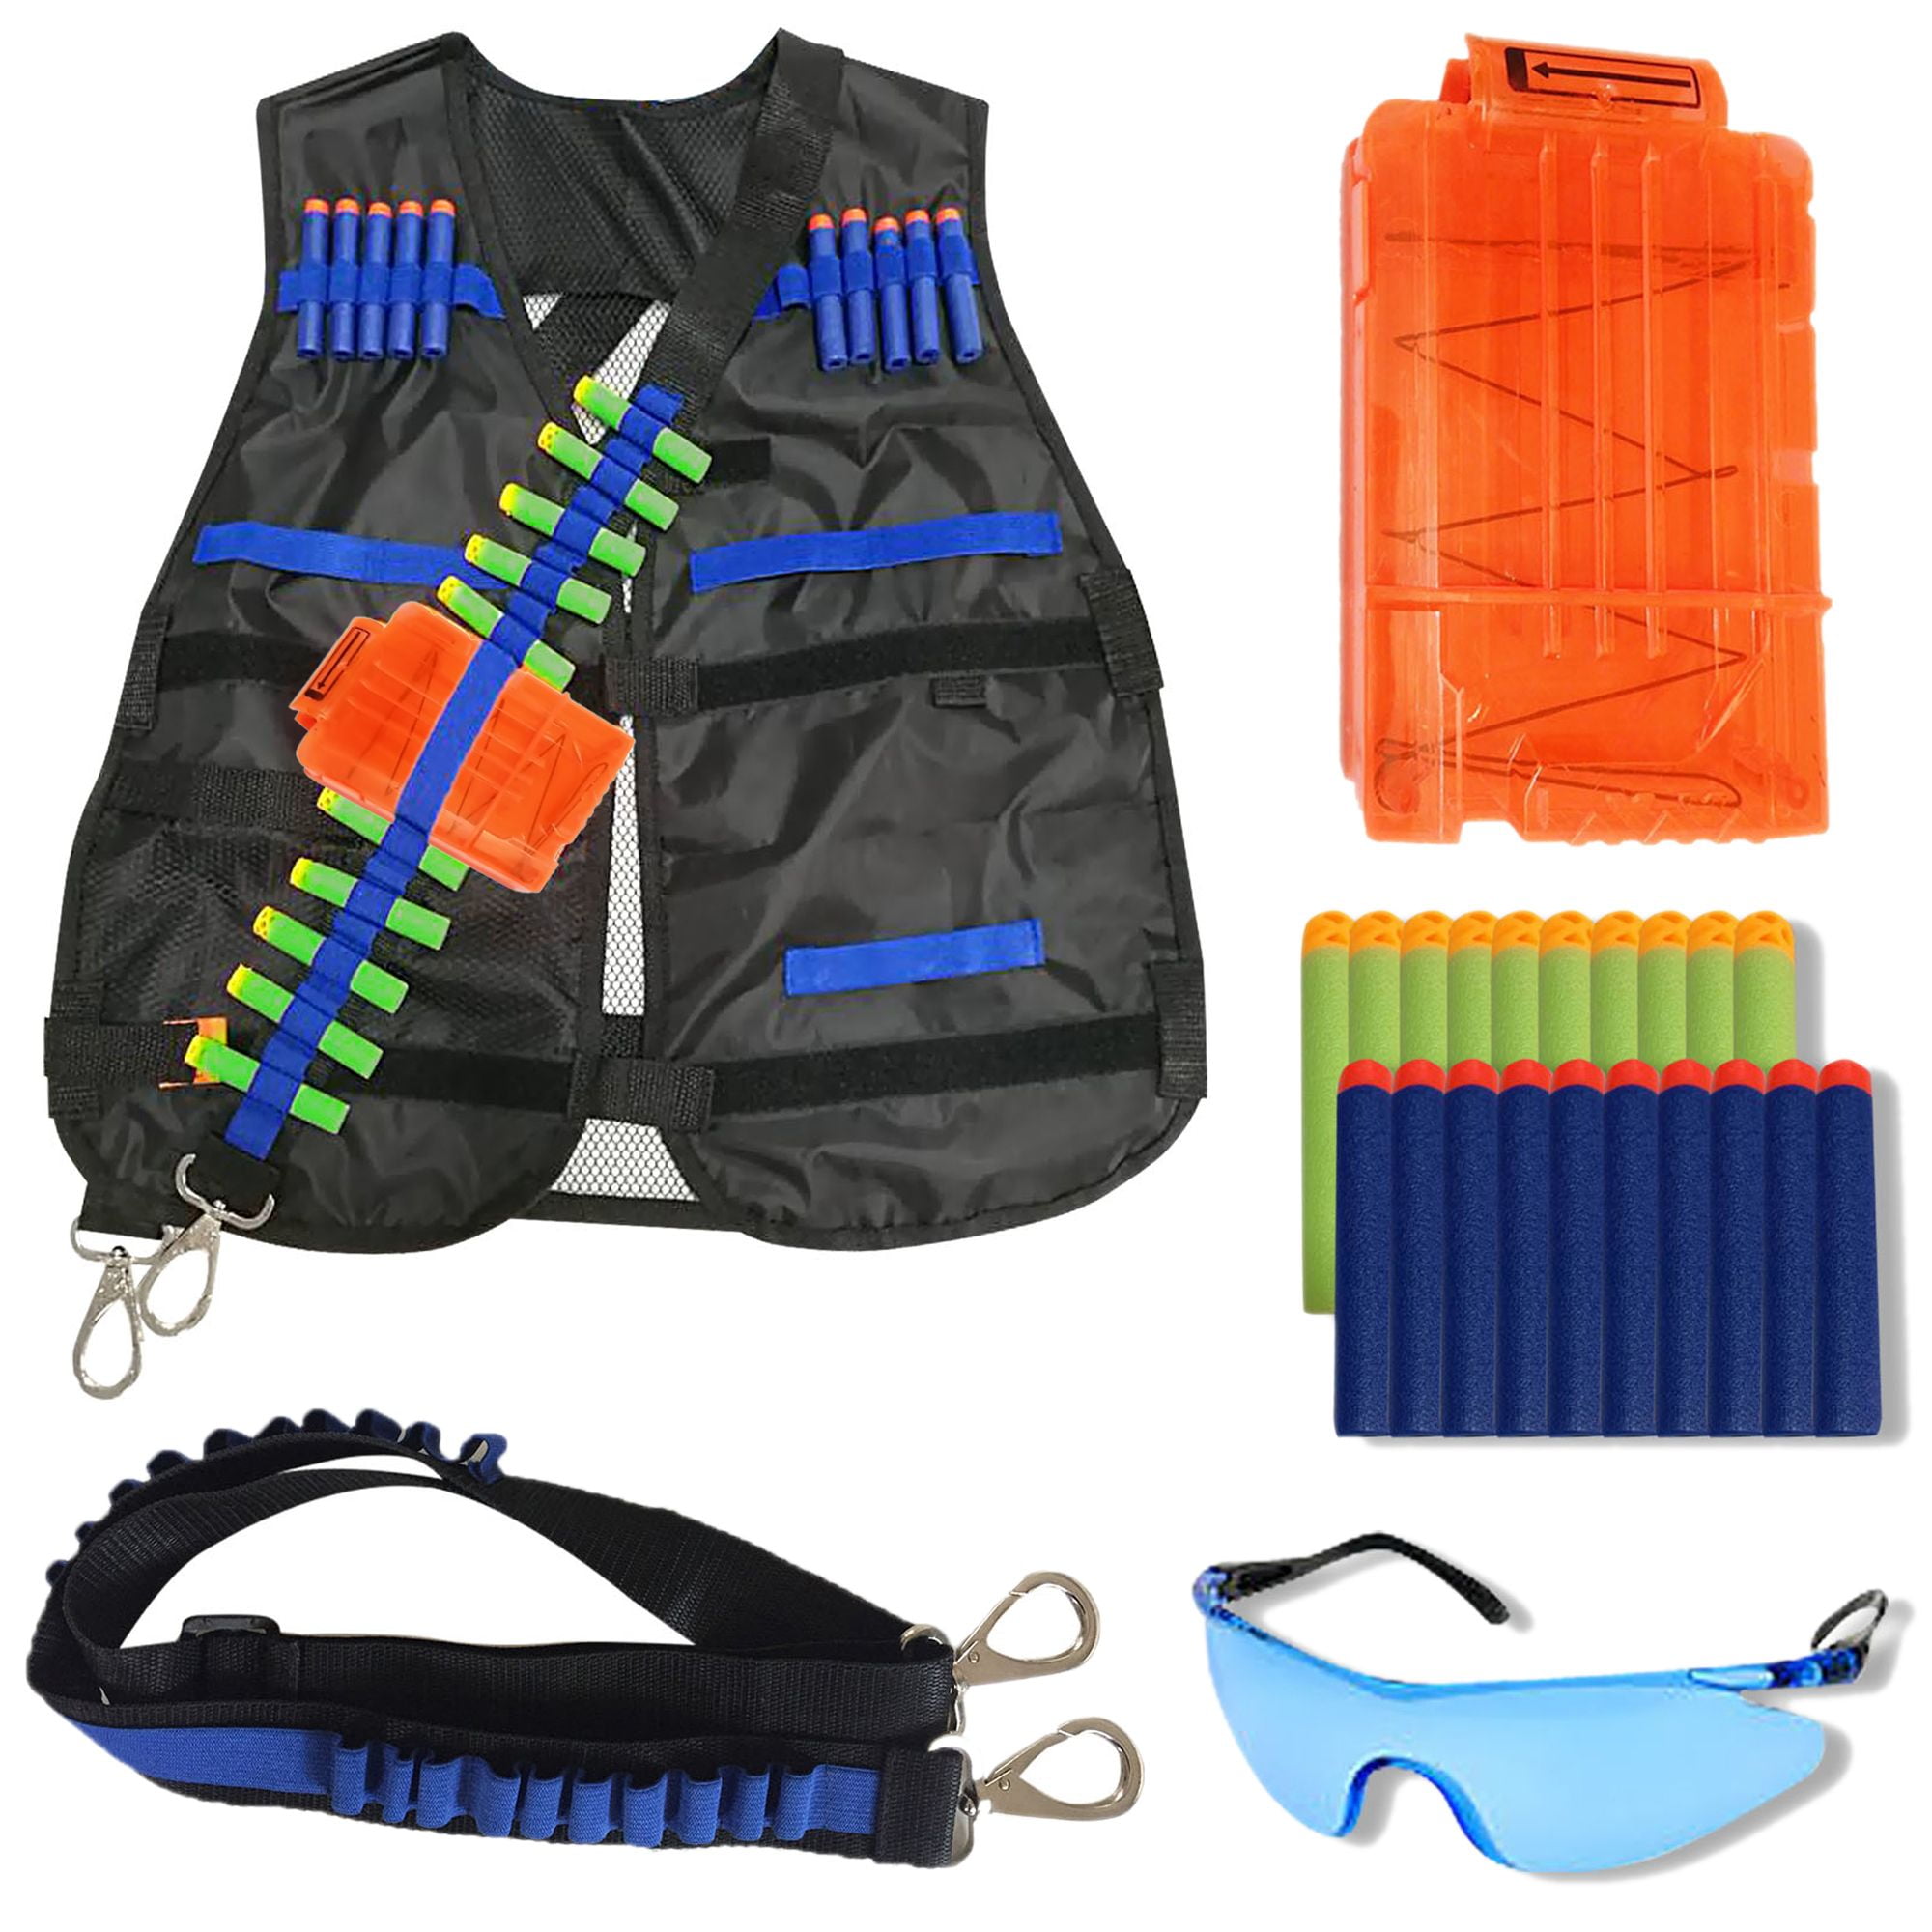 Kids Tactical Vest for Nerf Guns Series Nerf Vest Jacket Kit Toys for Boys Girls 